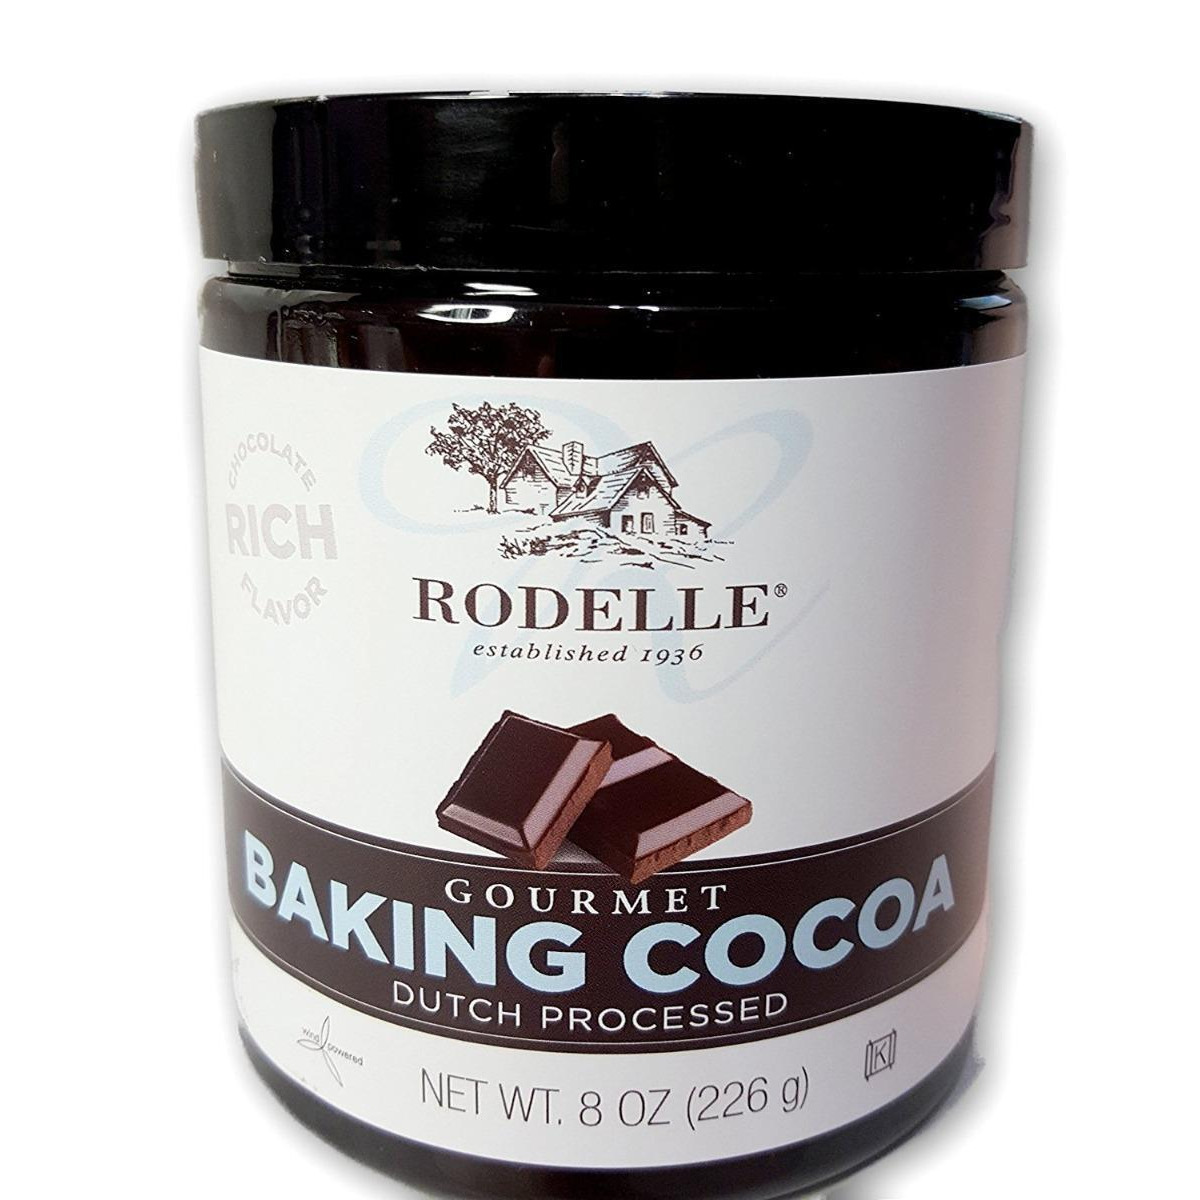 Rodelle KHLV01500602 Gourmet Baking Cocoa, 8 oz